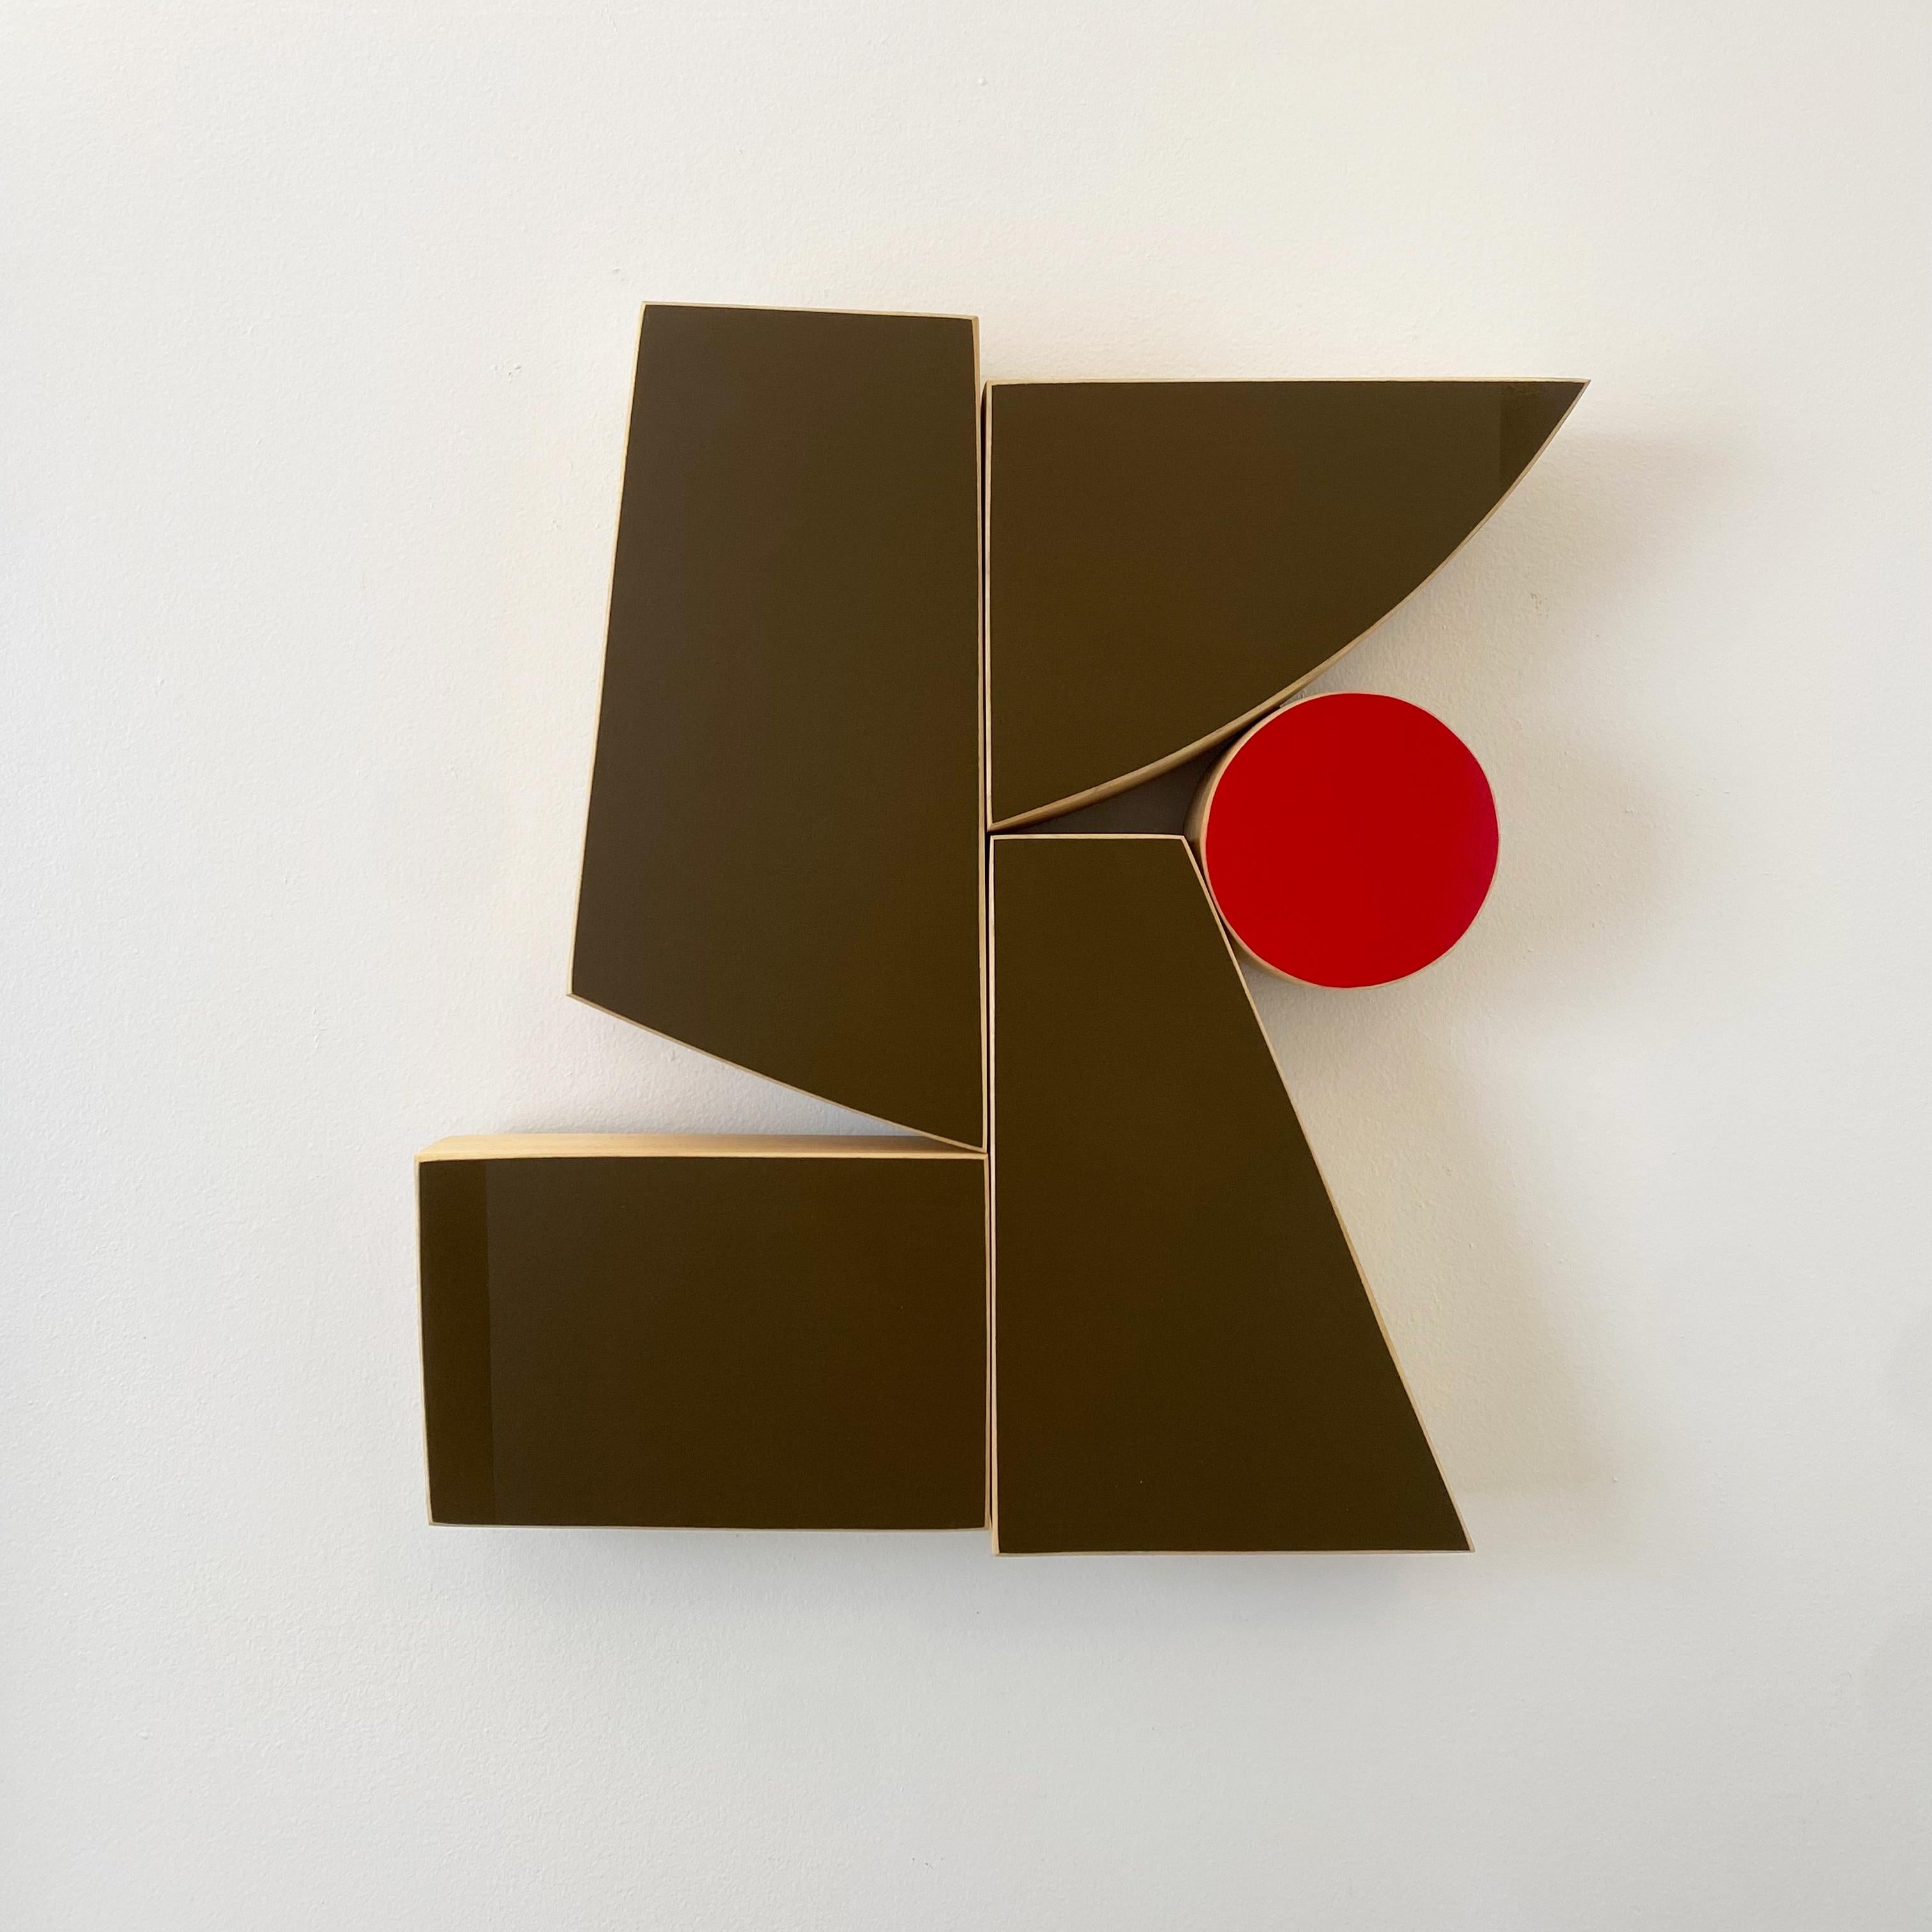 "SKA" Wall Sculpture-wood, minimalism, mid century modern, brown, tan, mcm - Mixed Media Art by Scott Troxel